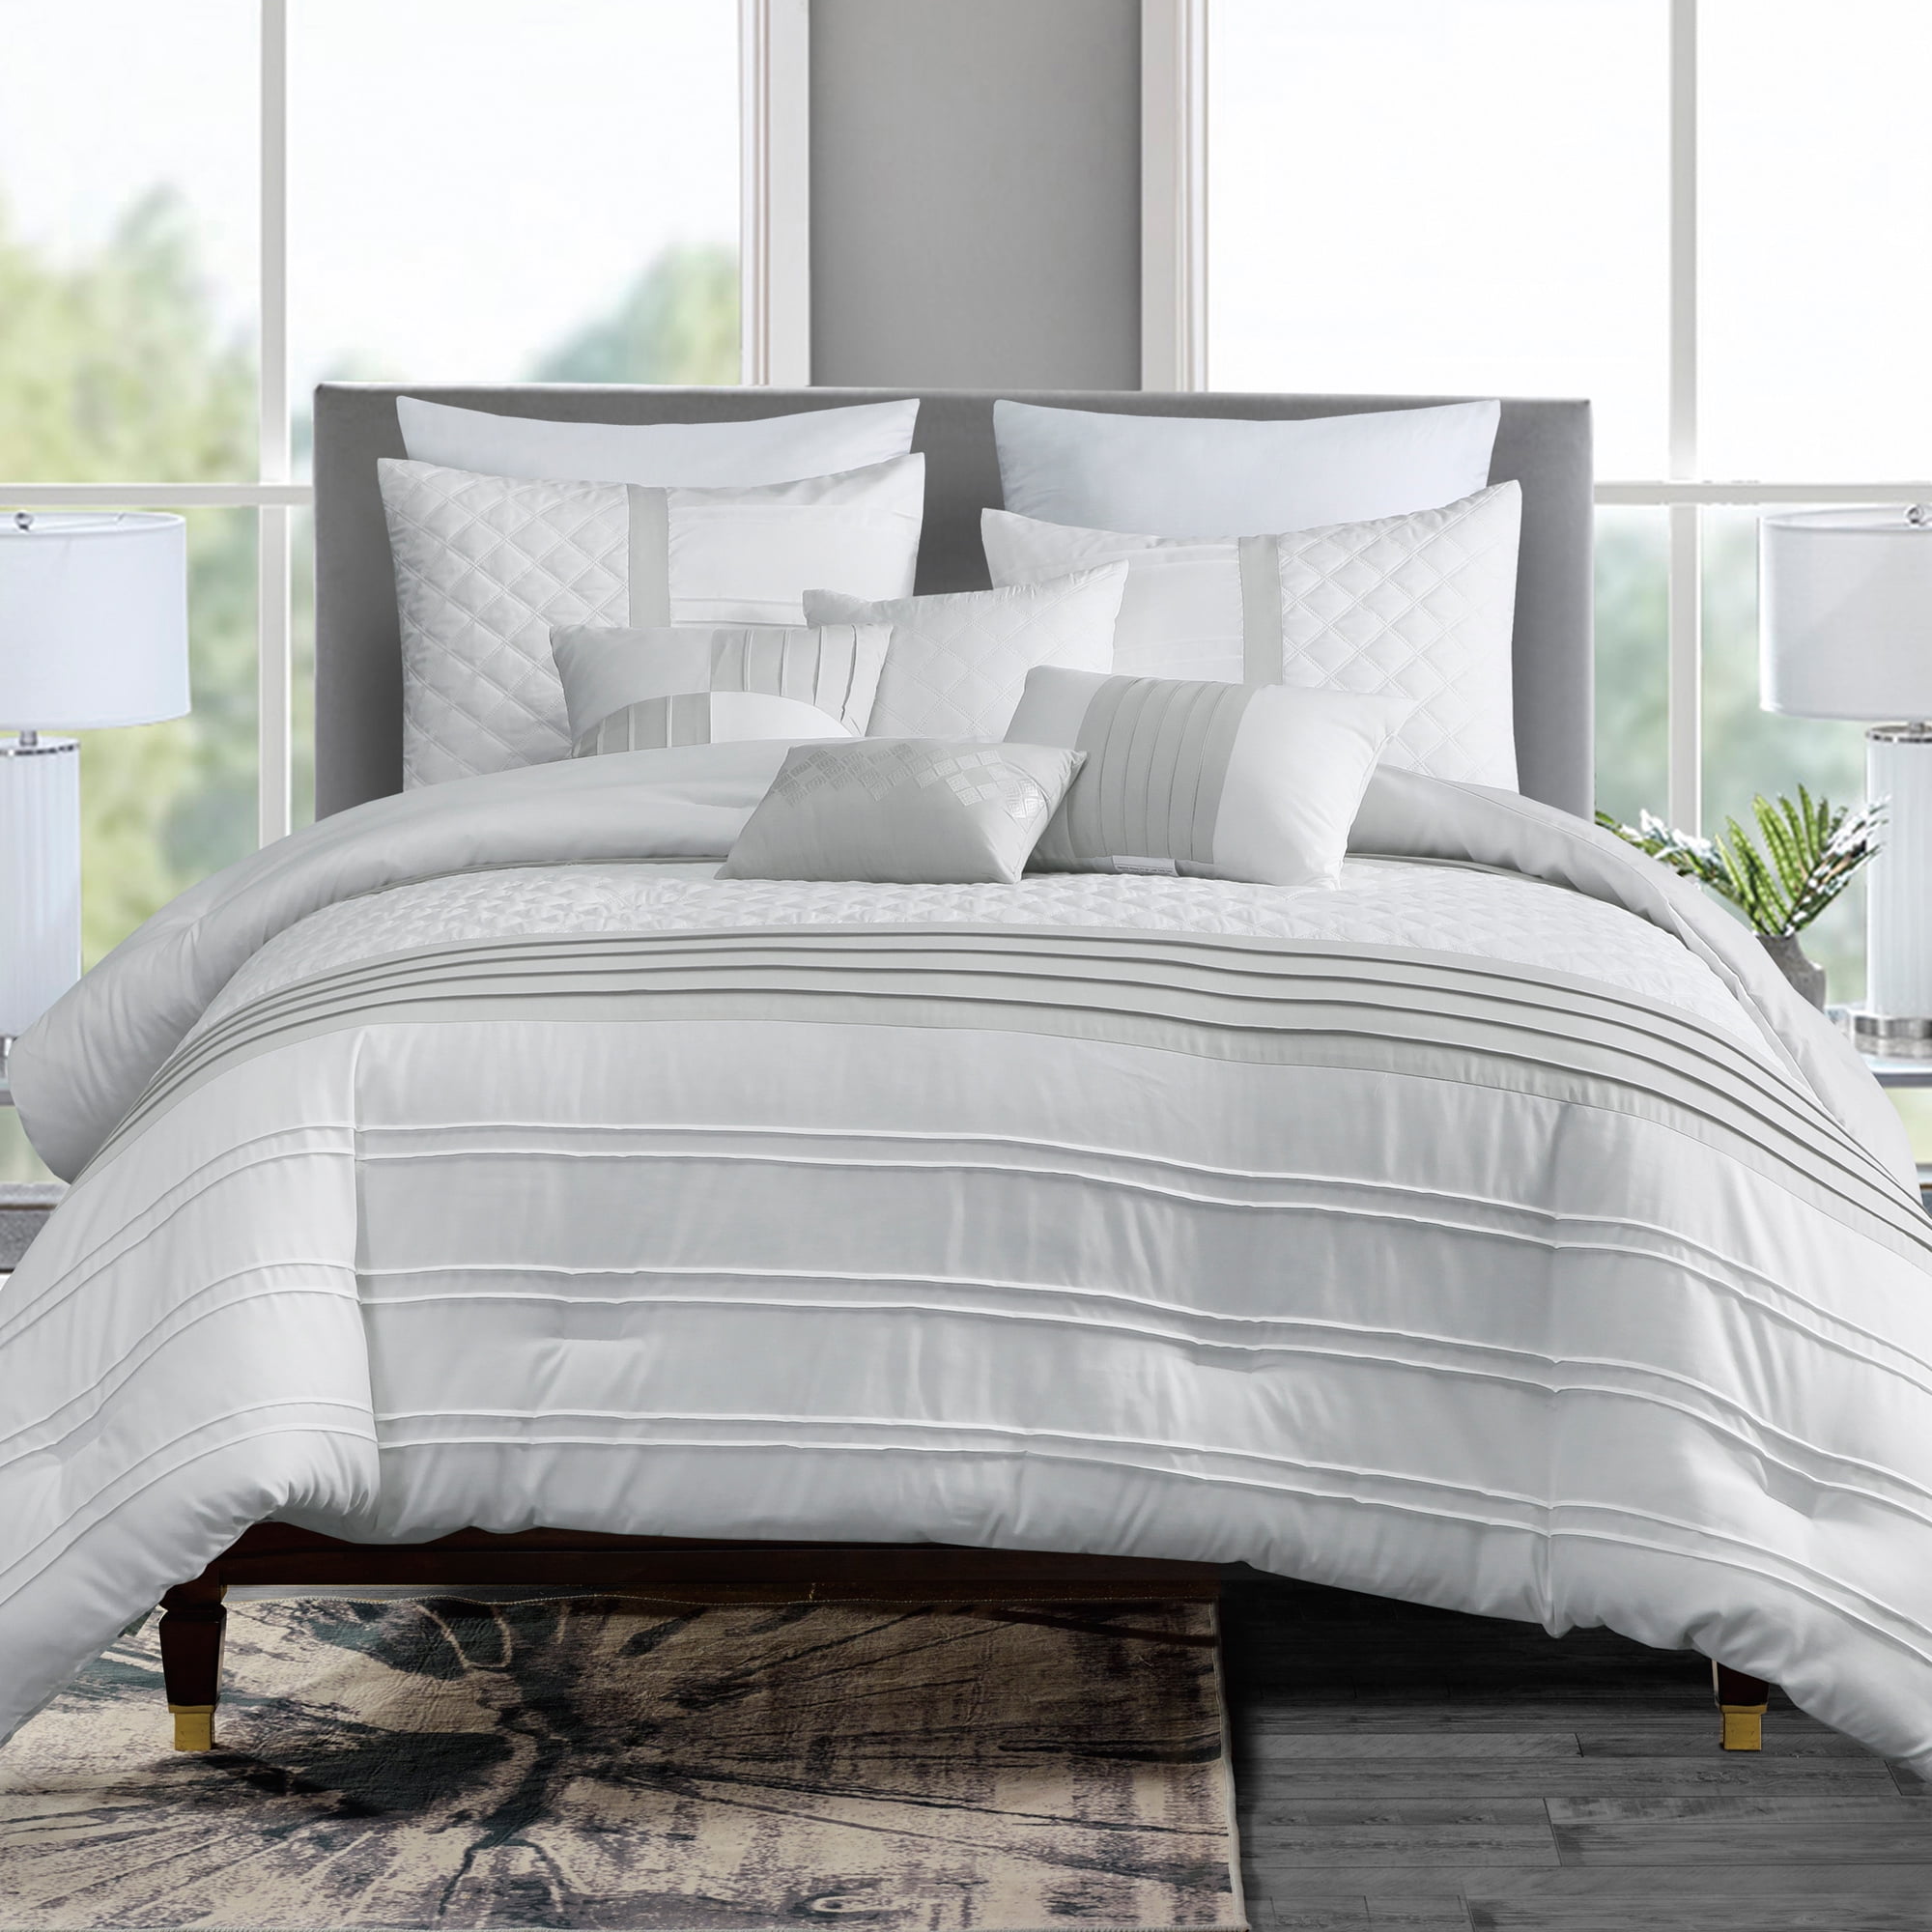 HGMart Bedding Comforter Set Bed In A Bag - 7 Piece Luxury Microfiber